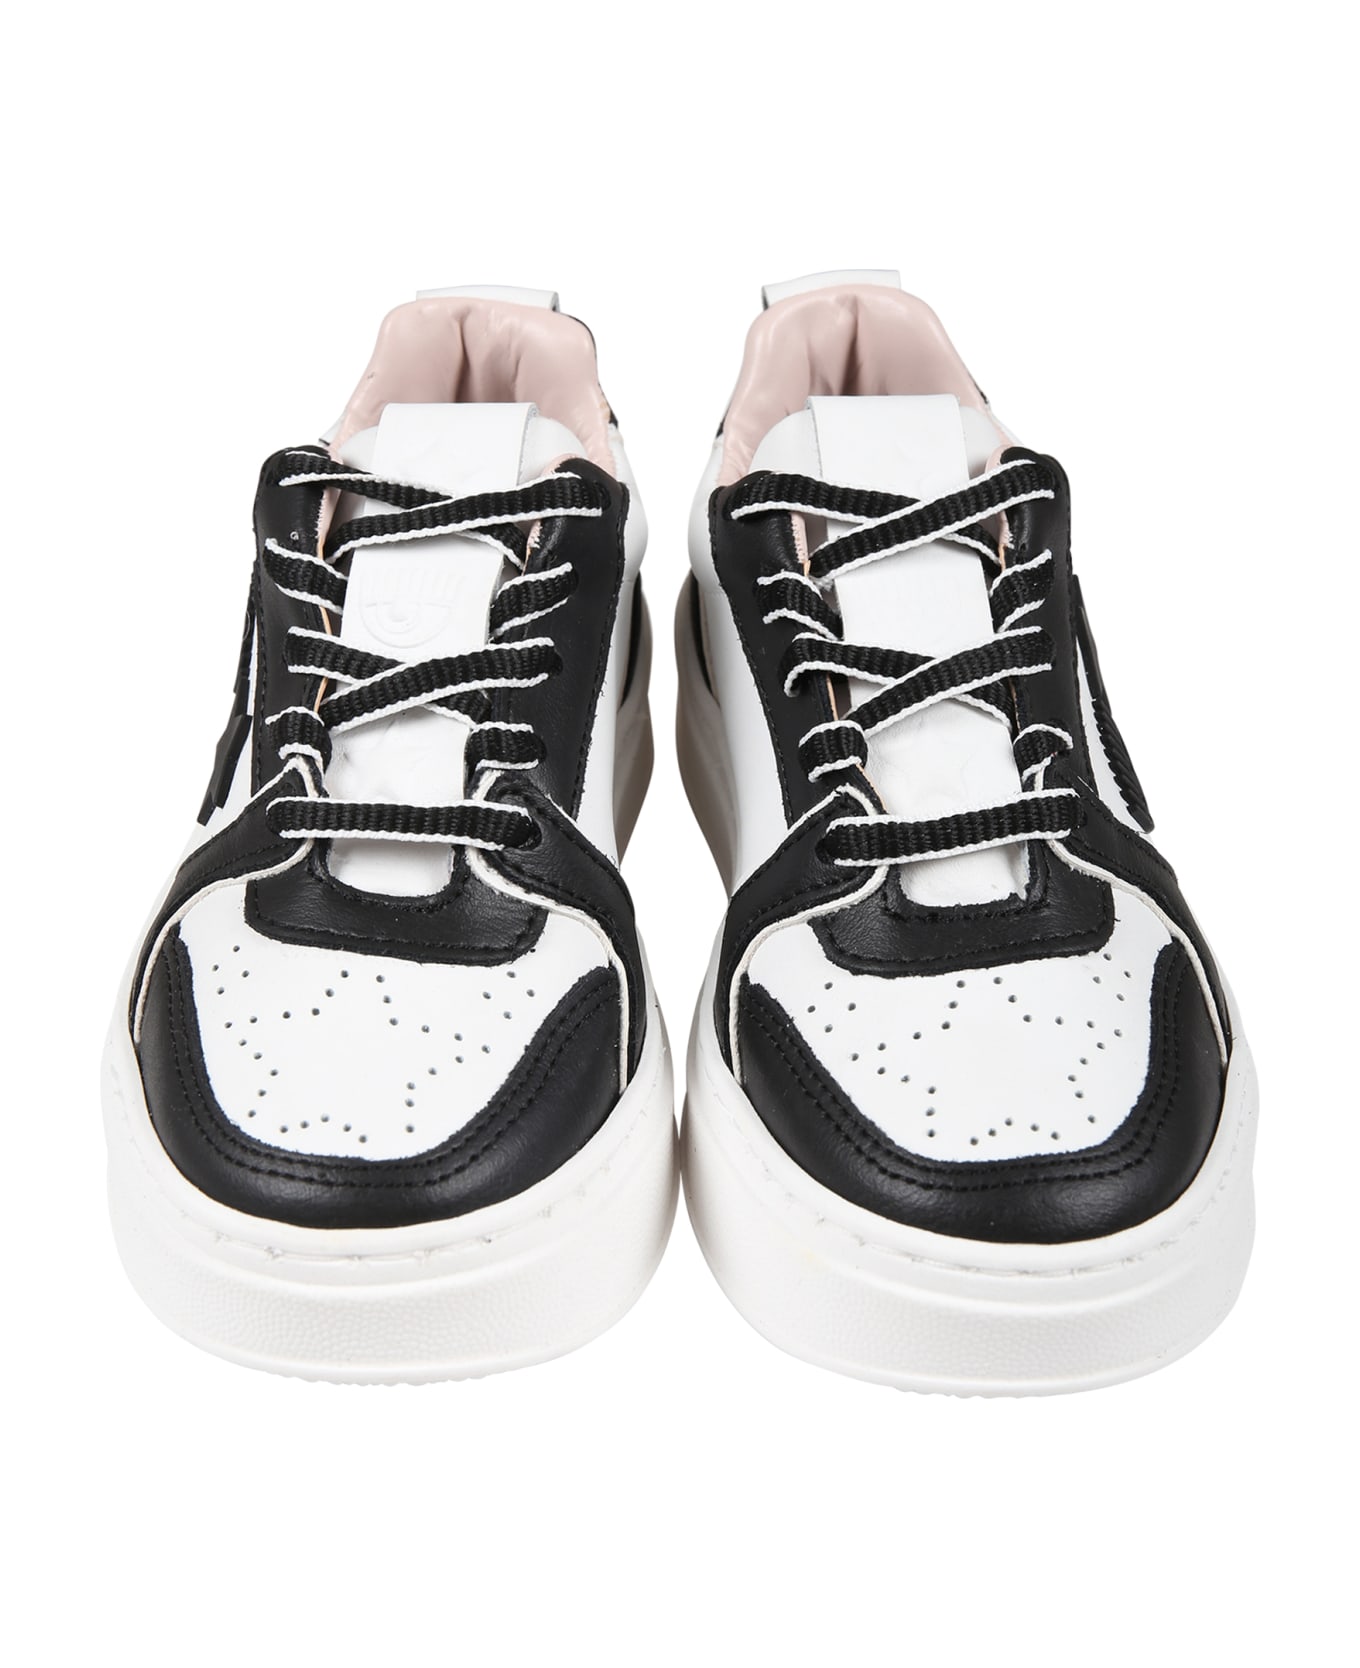 Chiara Ferragni White Sneakers For Girl With Eyestar - Multicolor